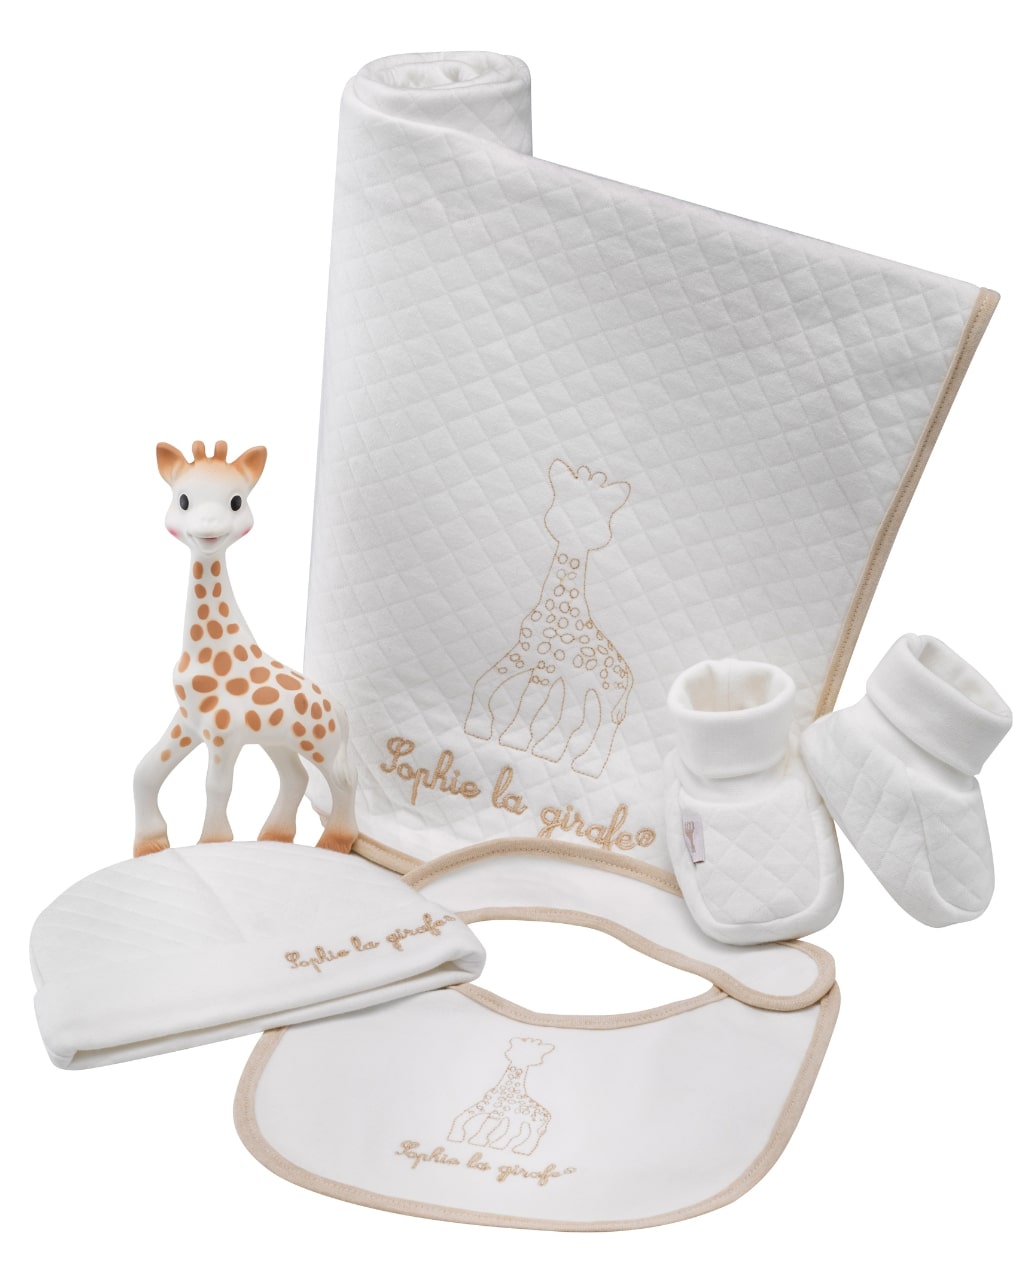 O meu primeiro kit de nascimento so'pure sophie la girafe. 100% algodão orgânico - vulli - SOPHIE LA GIRAFE